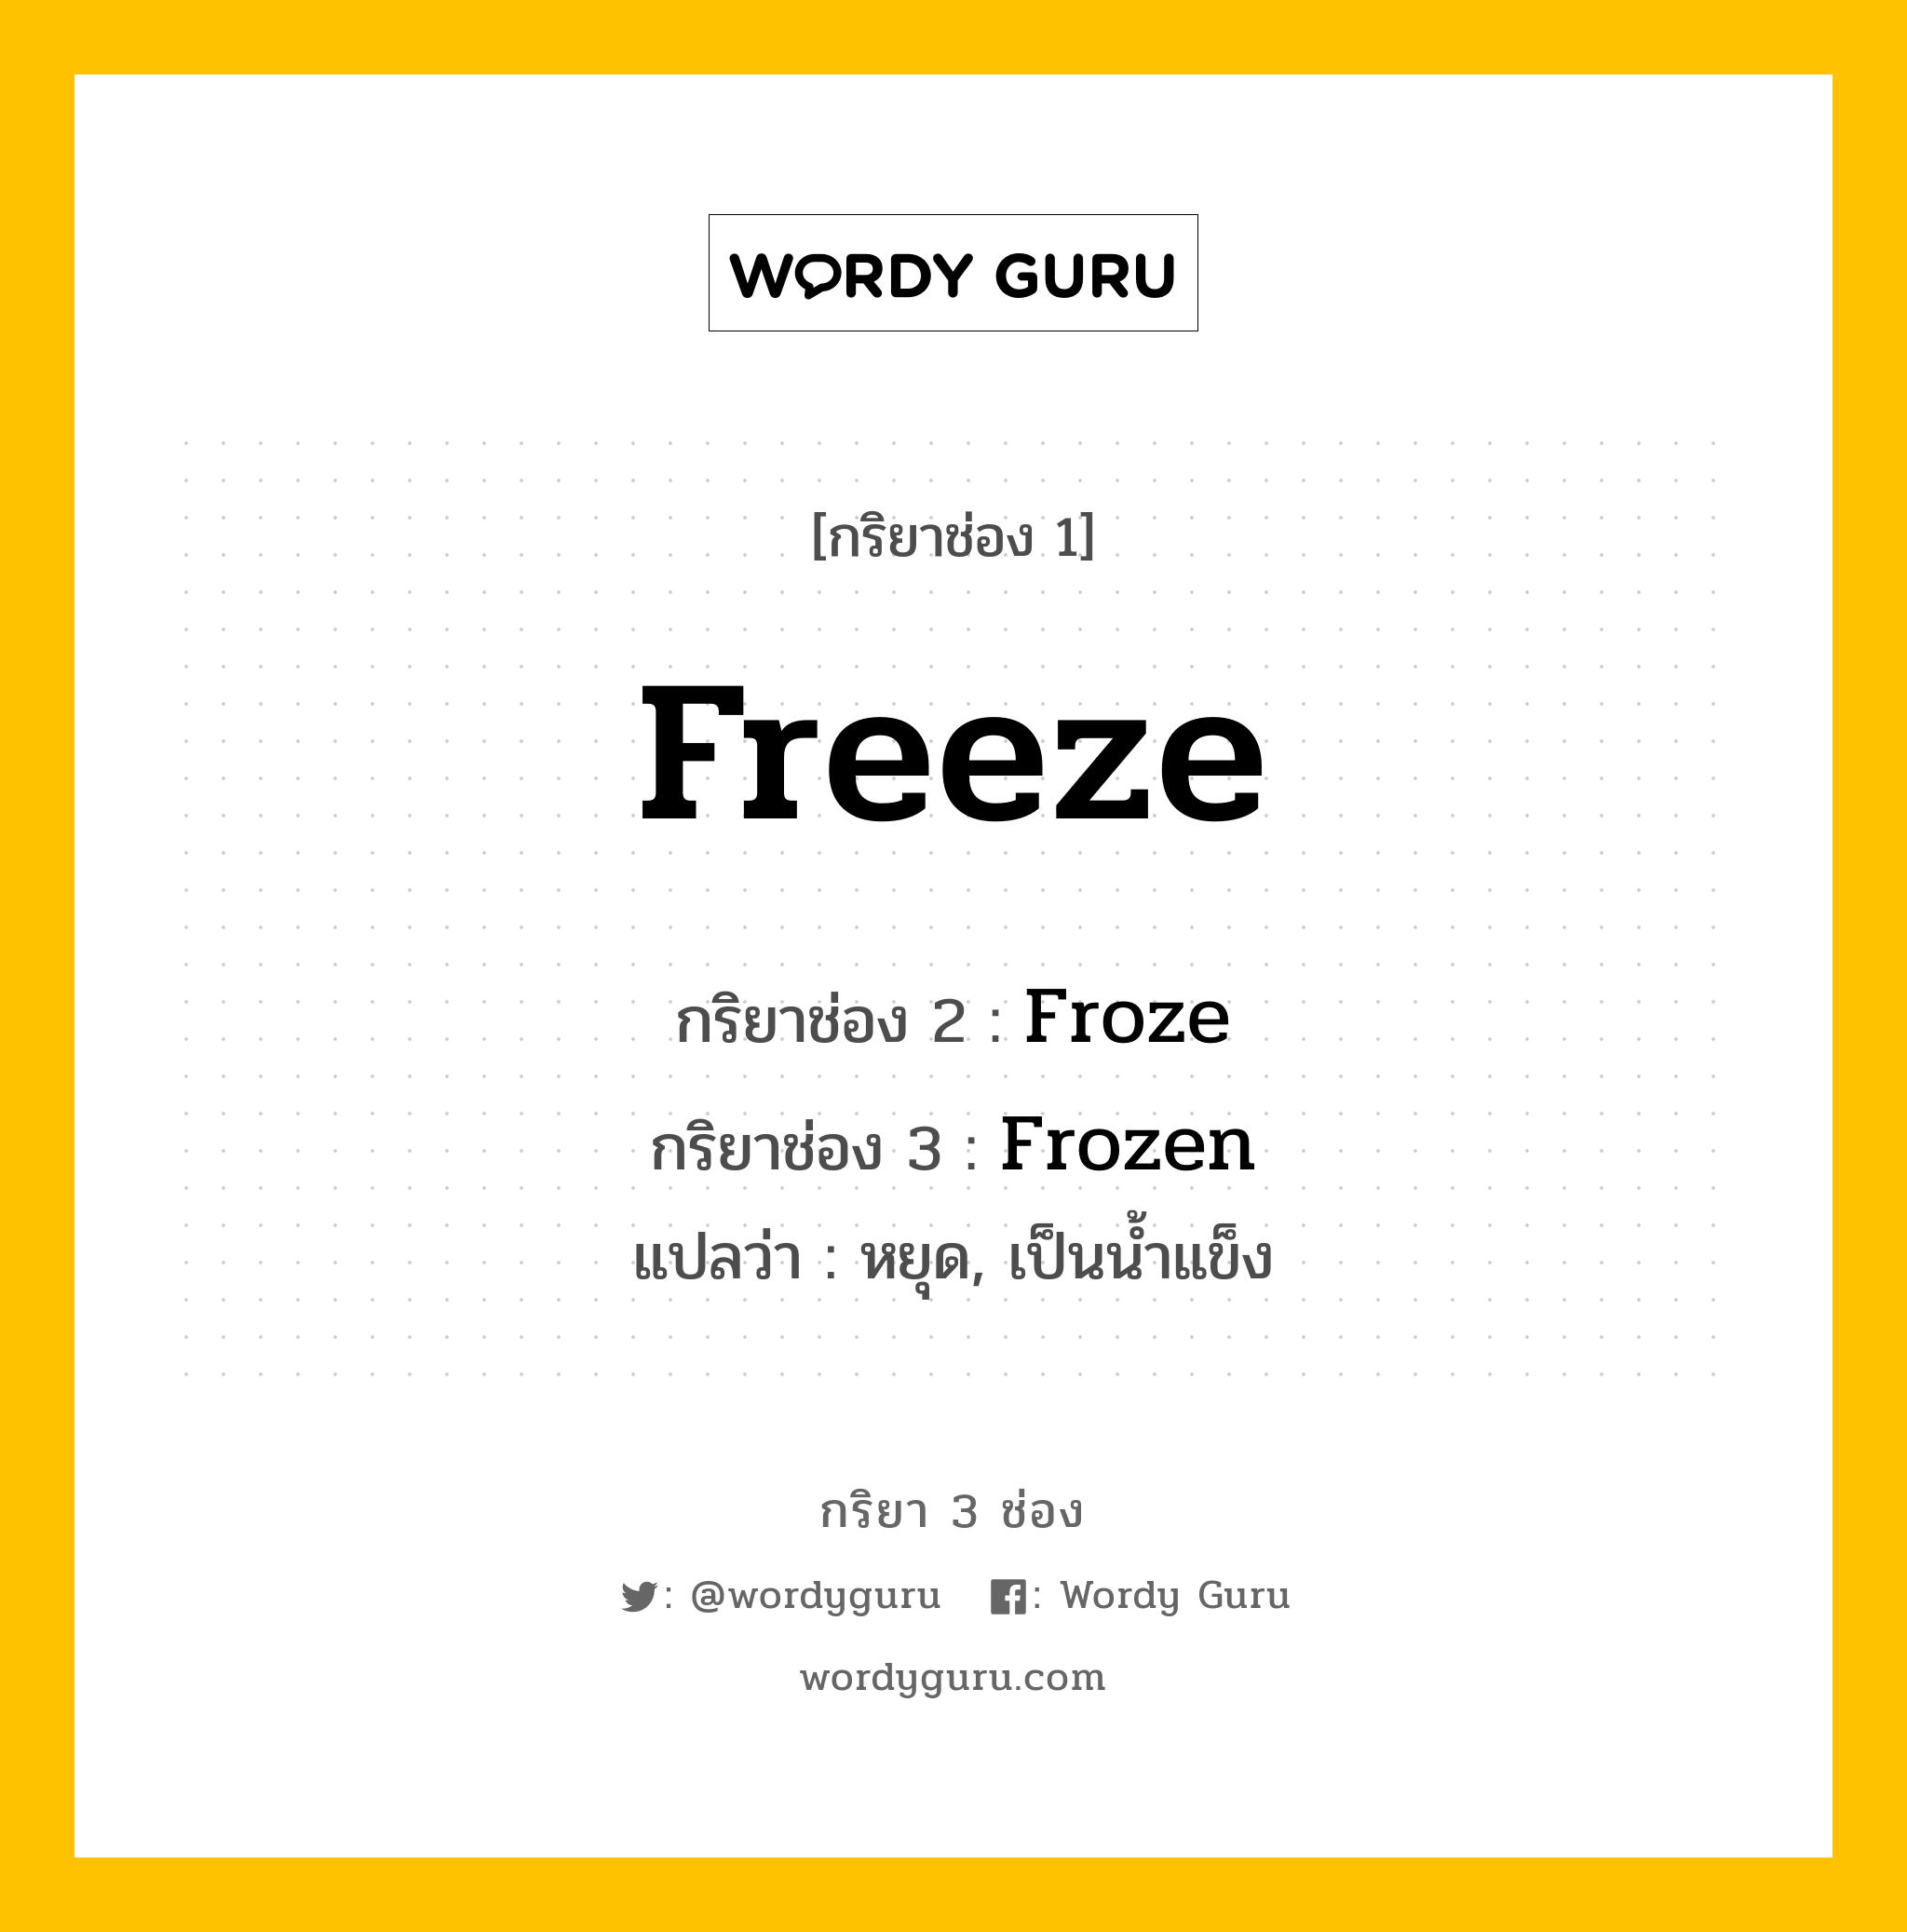 กริยา 3 ช่อง: Freeze ช่อง 2 Freeze ช่อง 3 คืออะไร, กริยาช่อง 1 Freeze กริยาช่อง 2 Froze กริยาช่อง 3 Frozen แปลว่า หยุด, เป็นน้ำแข็ง หมวด Irregular Verb